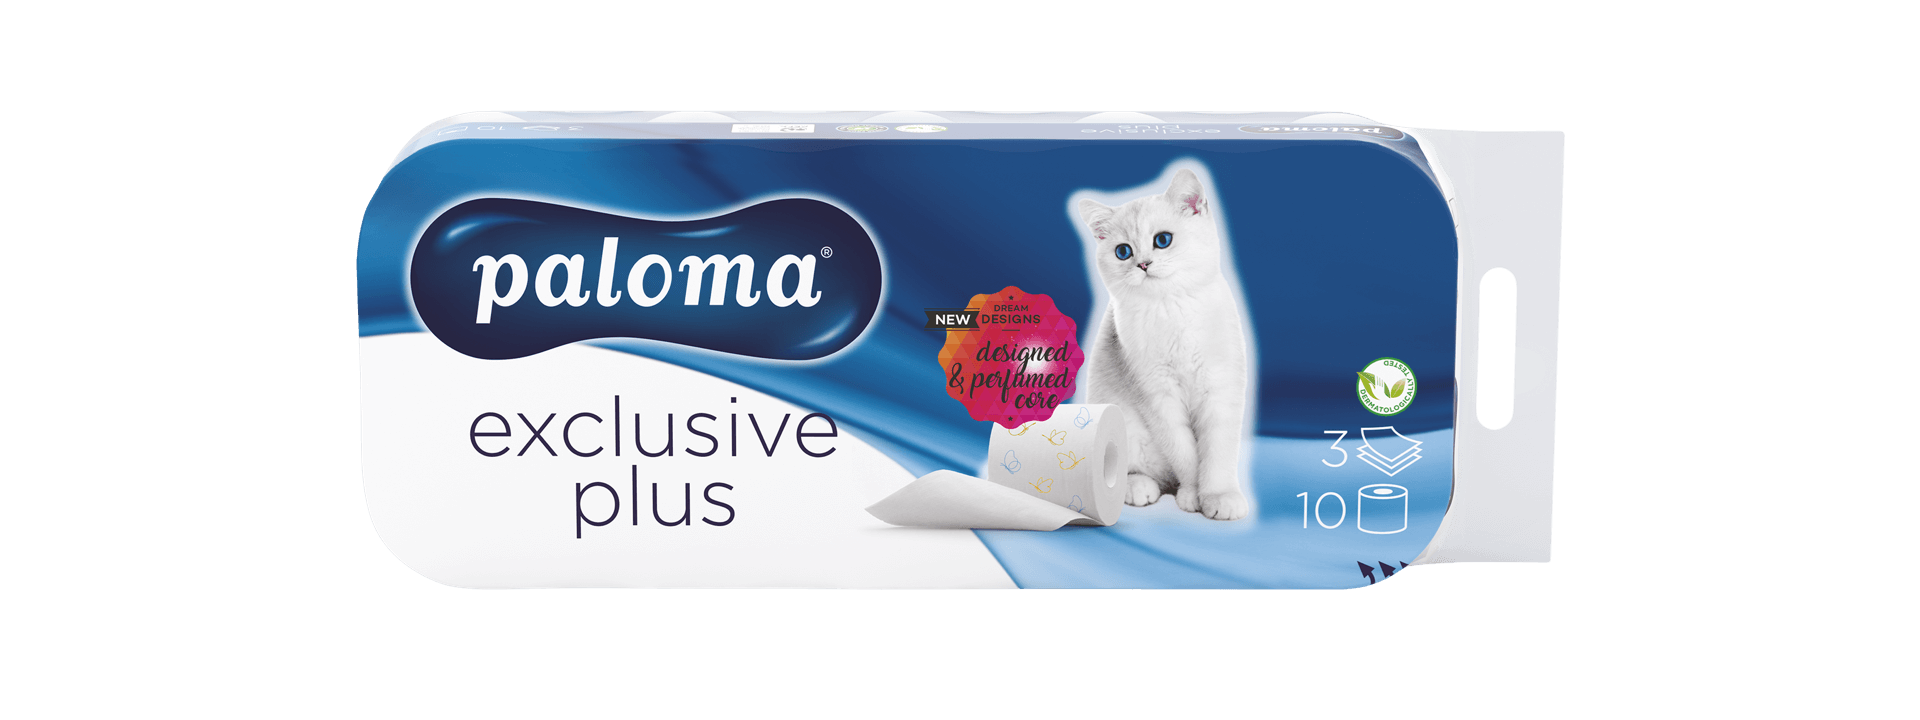 Paloma Exclusive Plus toaletni papir